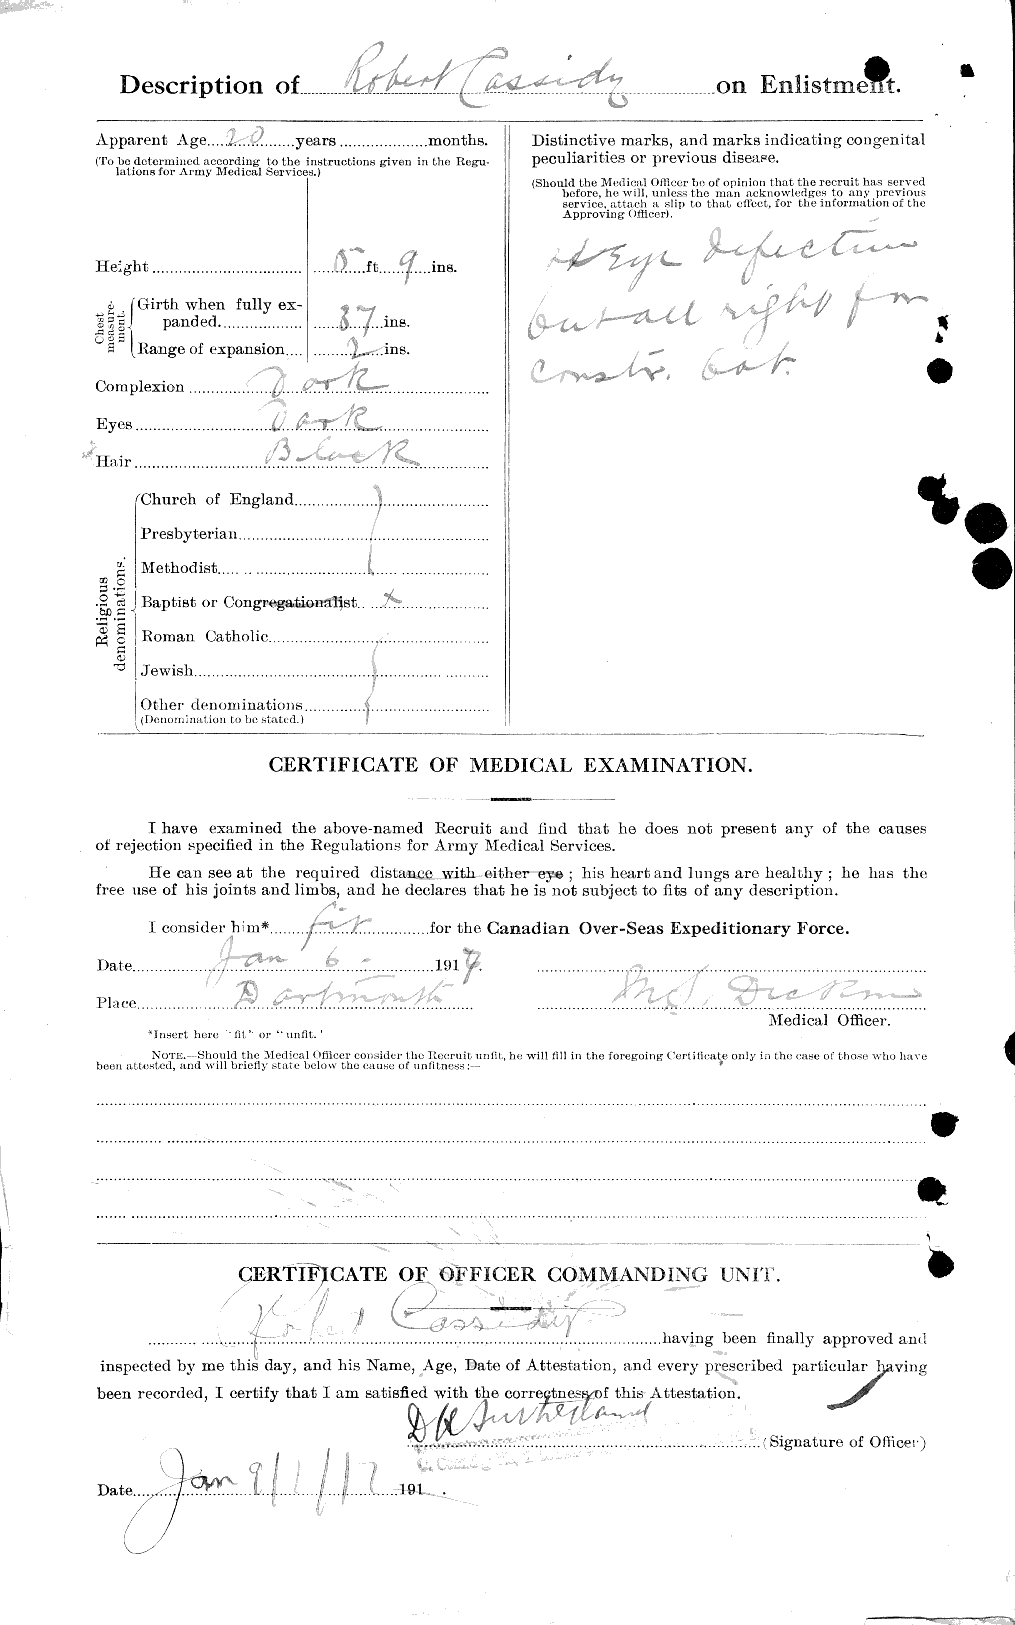 Dossiers du Personnel de la Première Guerre mondiale - CEC 012905b